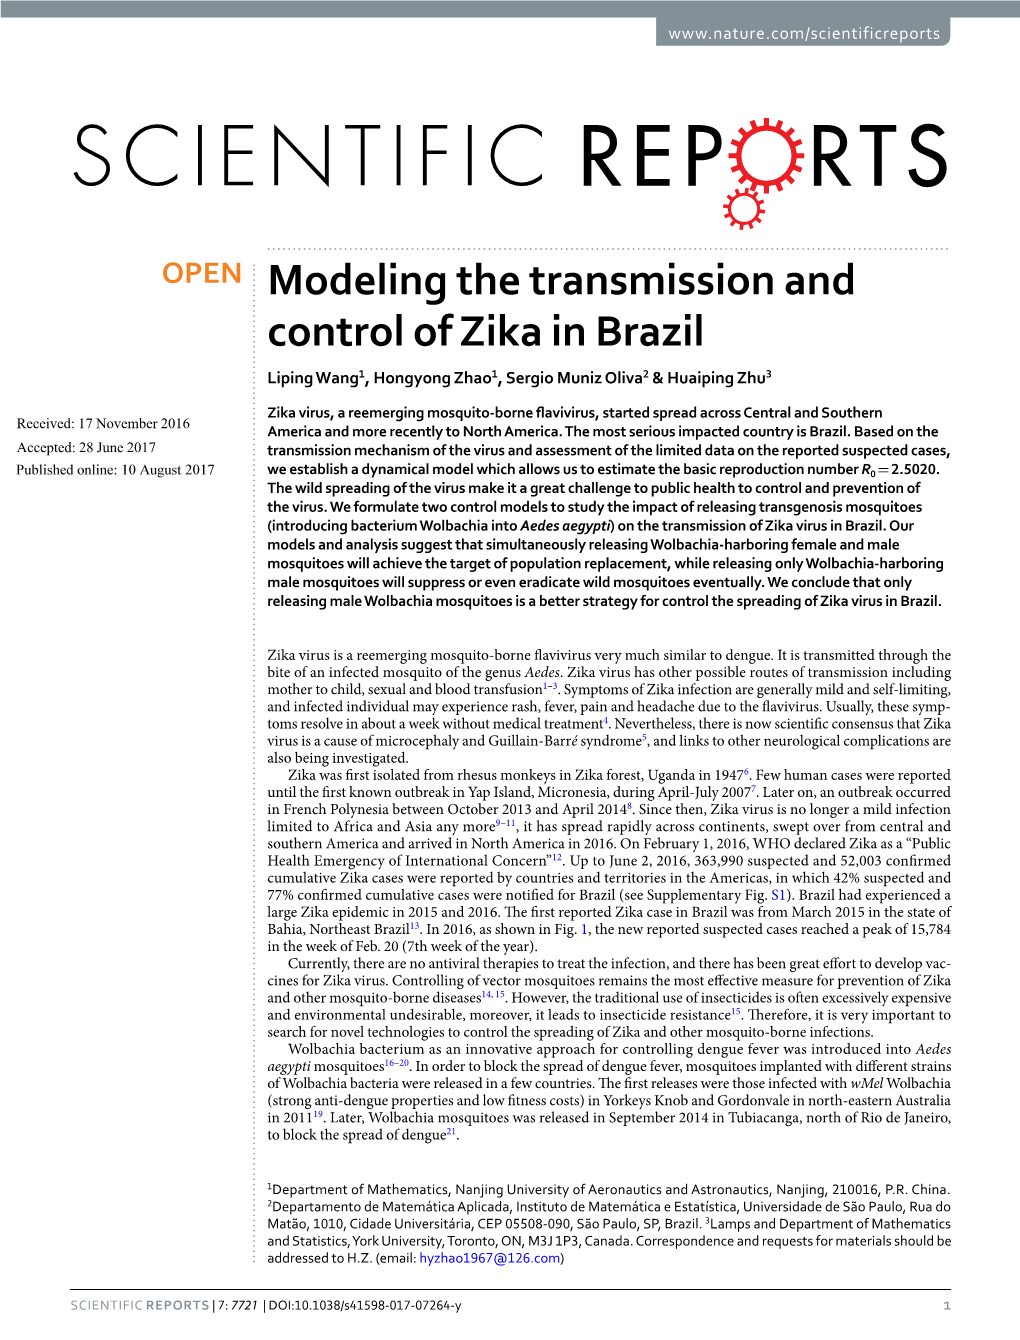 Modeling the Transmission and Control of Zika in Brazil Liping Wang1, Hongyong Zhao1, Sergio Muniz Oliva2 & Huaiping Zhu3